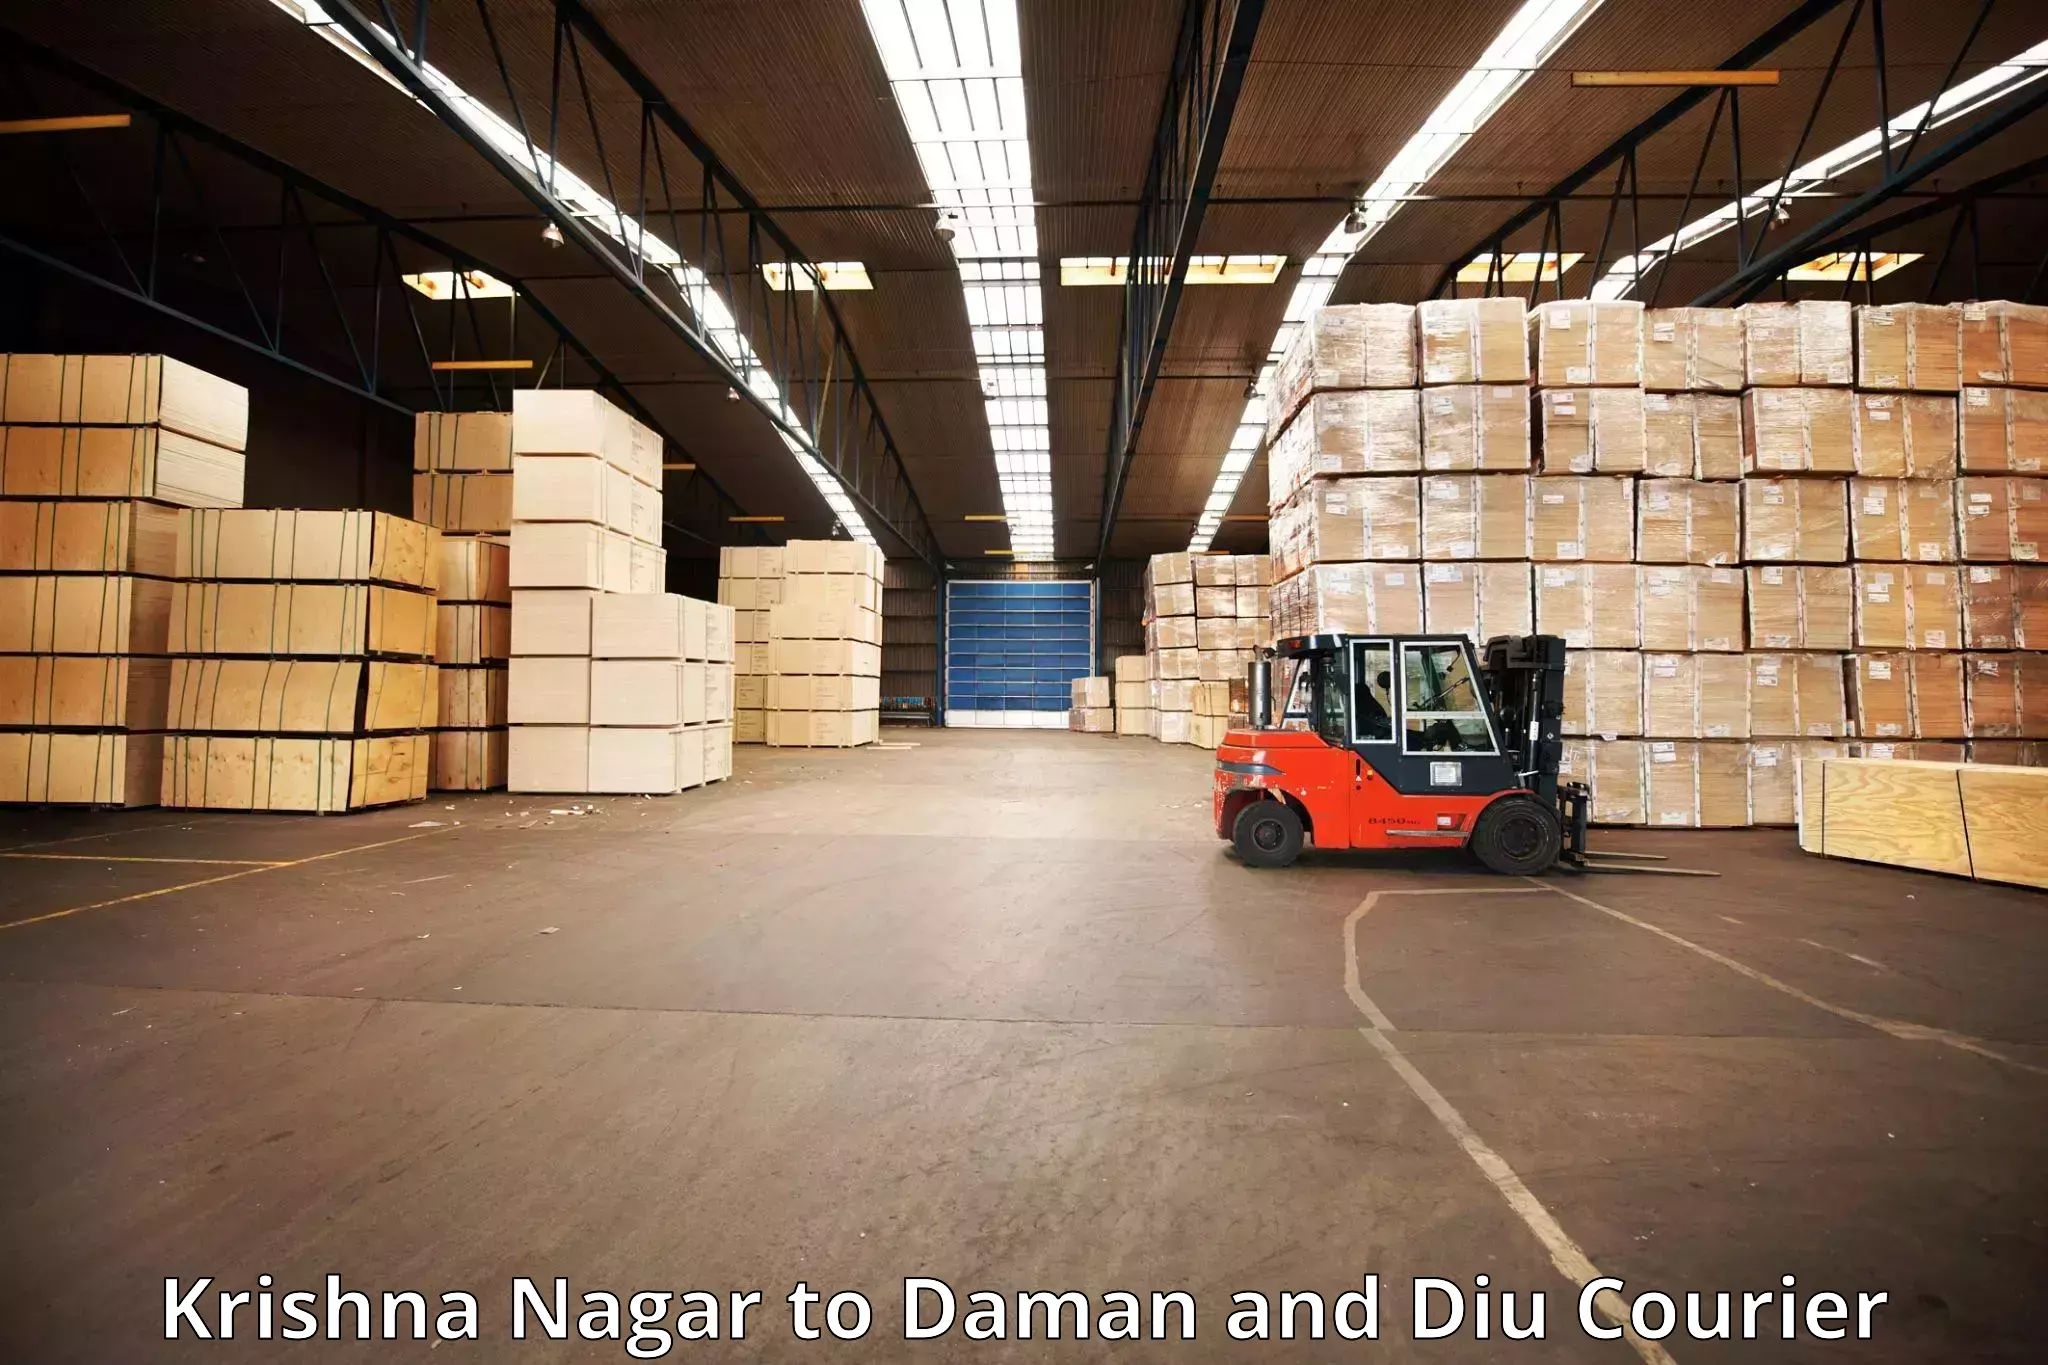 Baggage shipping experts Krishna Nagar to Daman and Diu